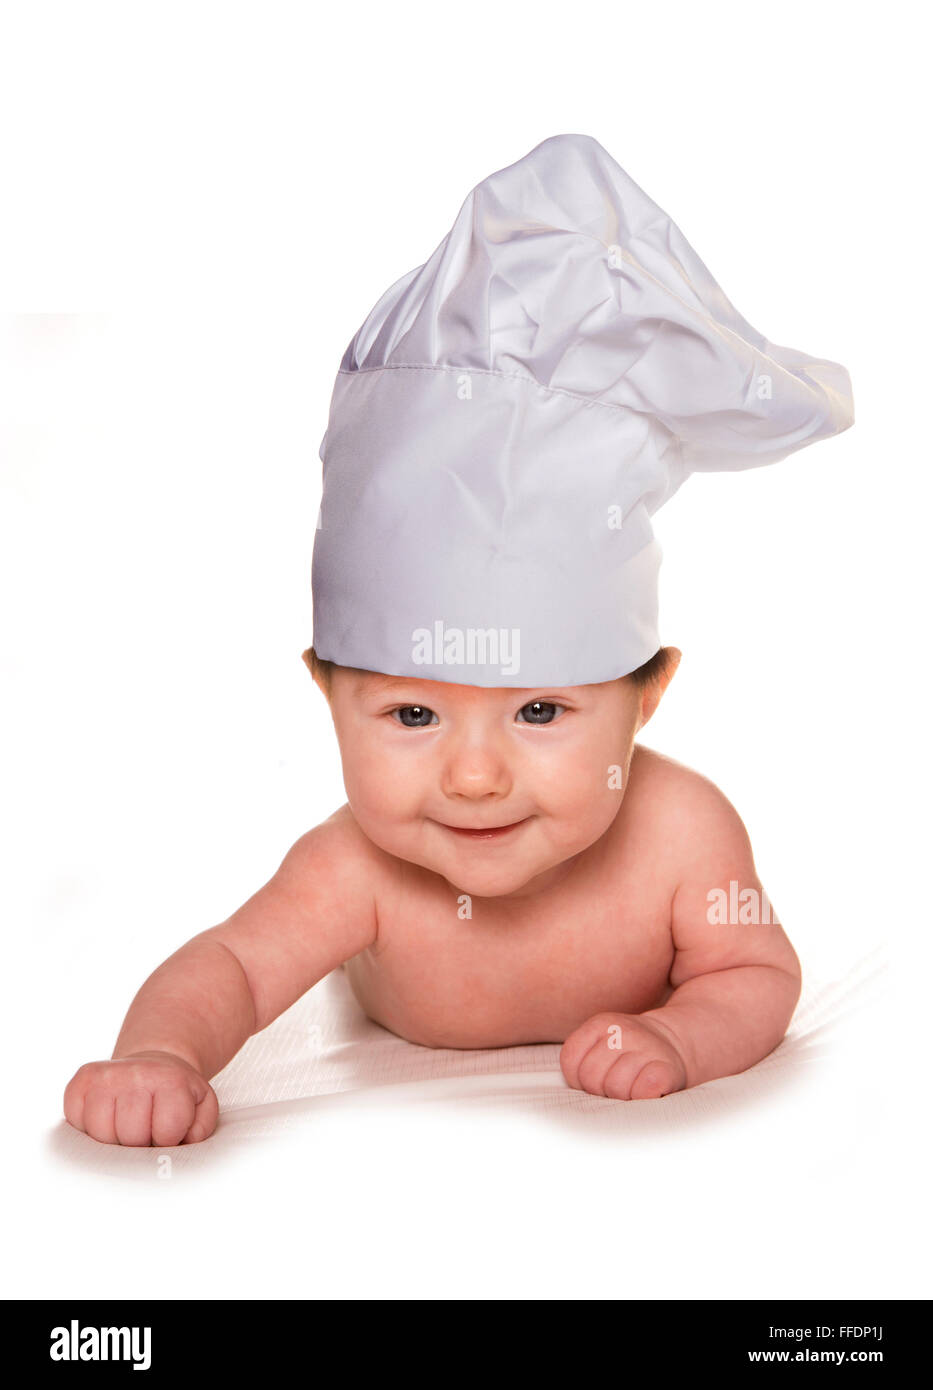 Bébé de trois mois portant découpe chef hat Banque D'Images